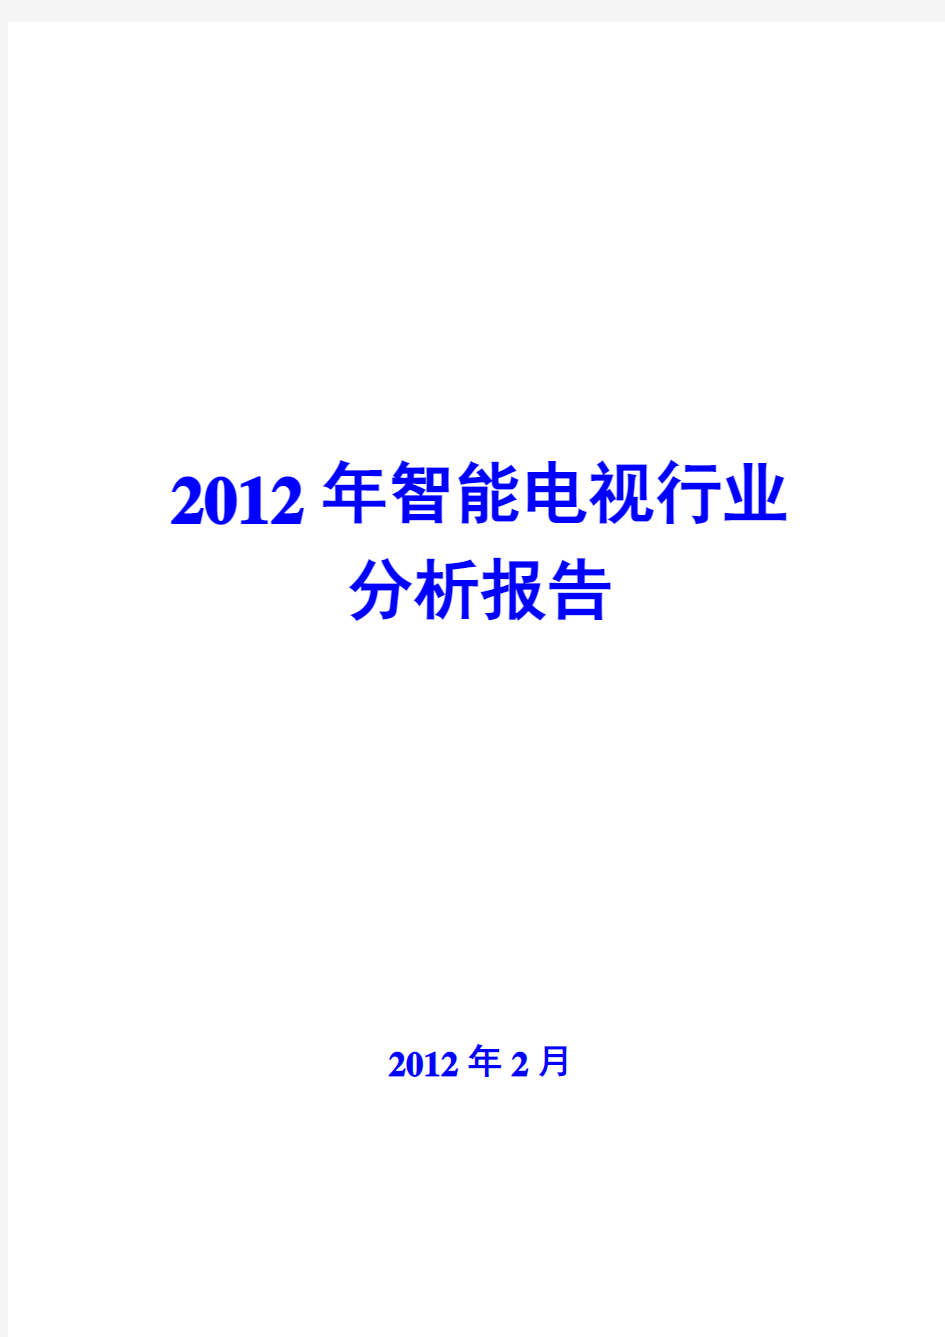 2012年智能电视行业分析报告